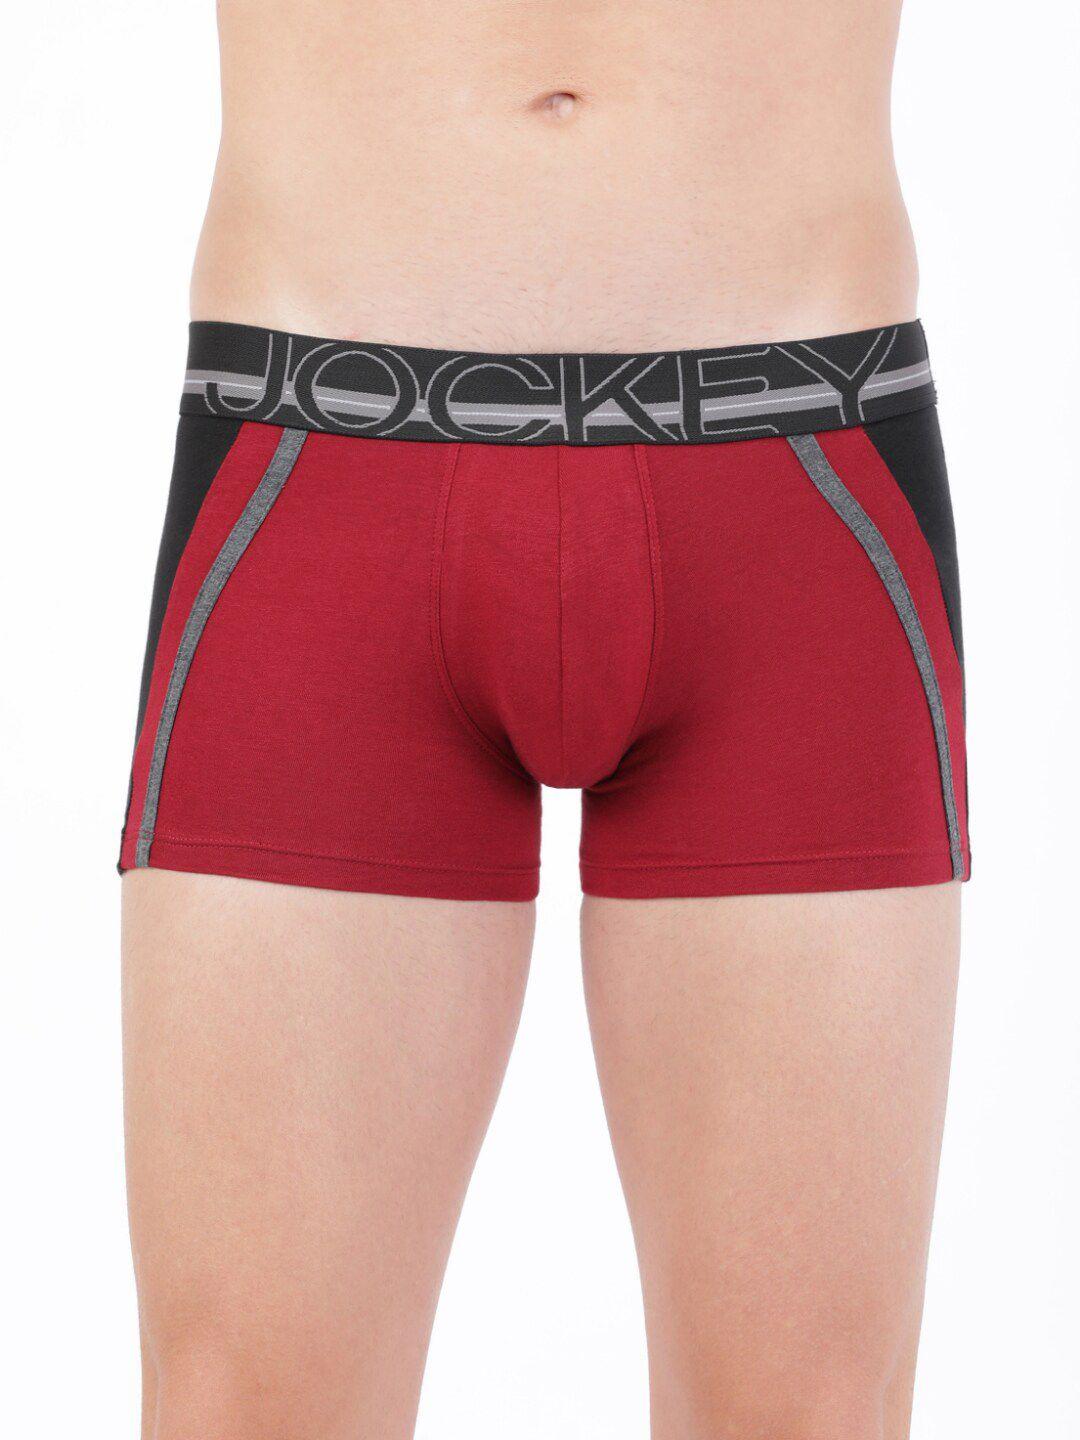 jockey-men-red-&-black-colourblocked-trunks-us21-0105